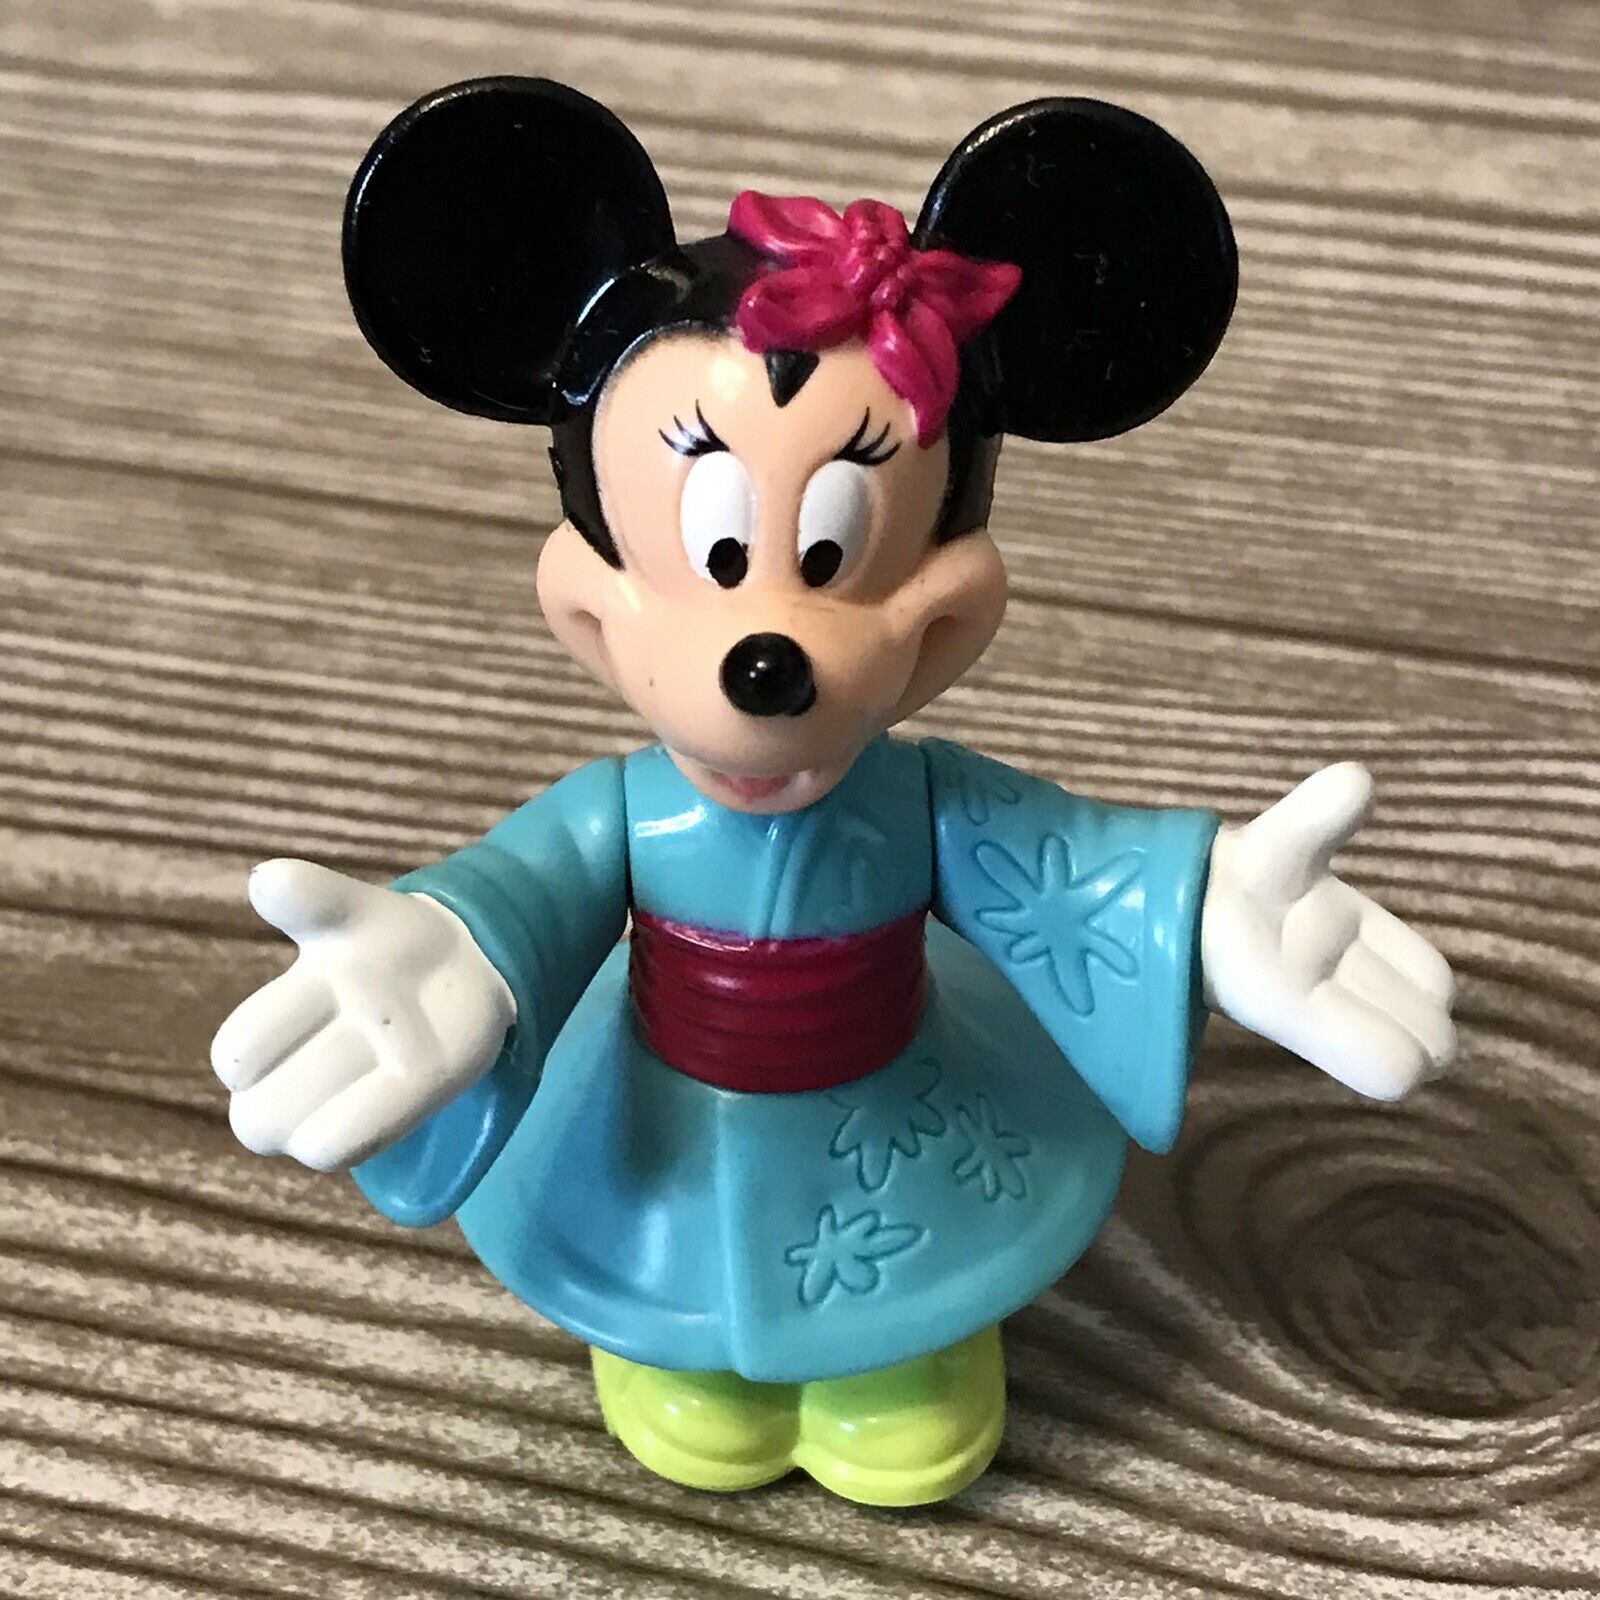 Disney Minnie Mouse In Kimono Epcot Center Toy Vintage Mini Action Figure 1993